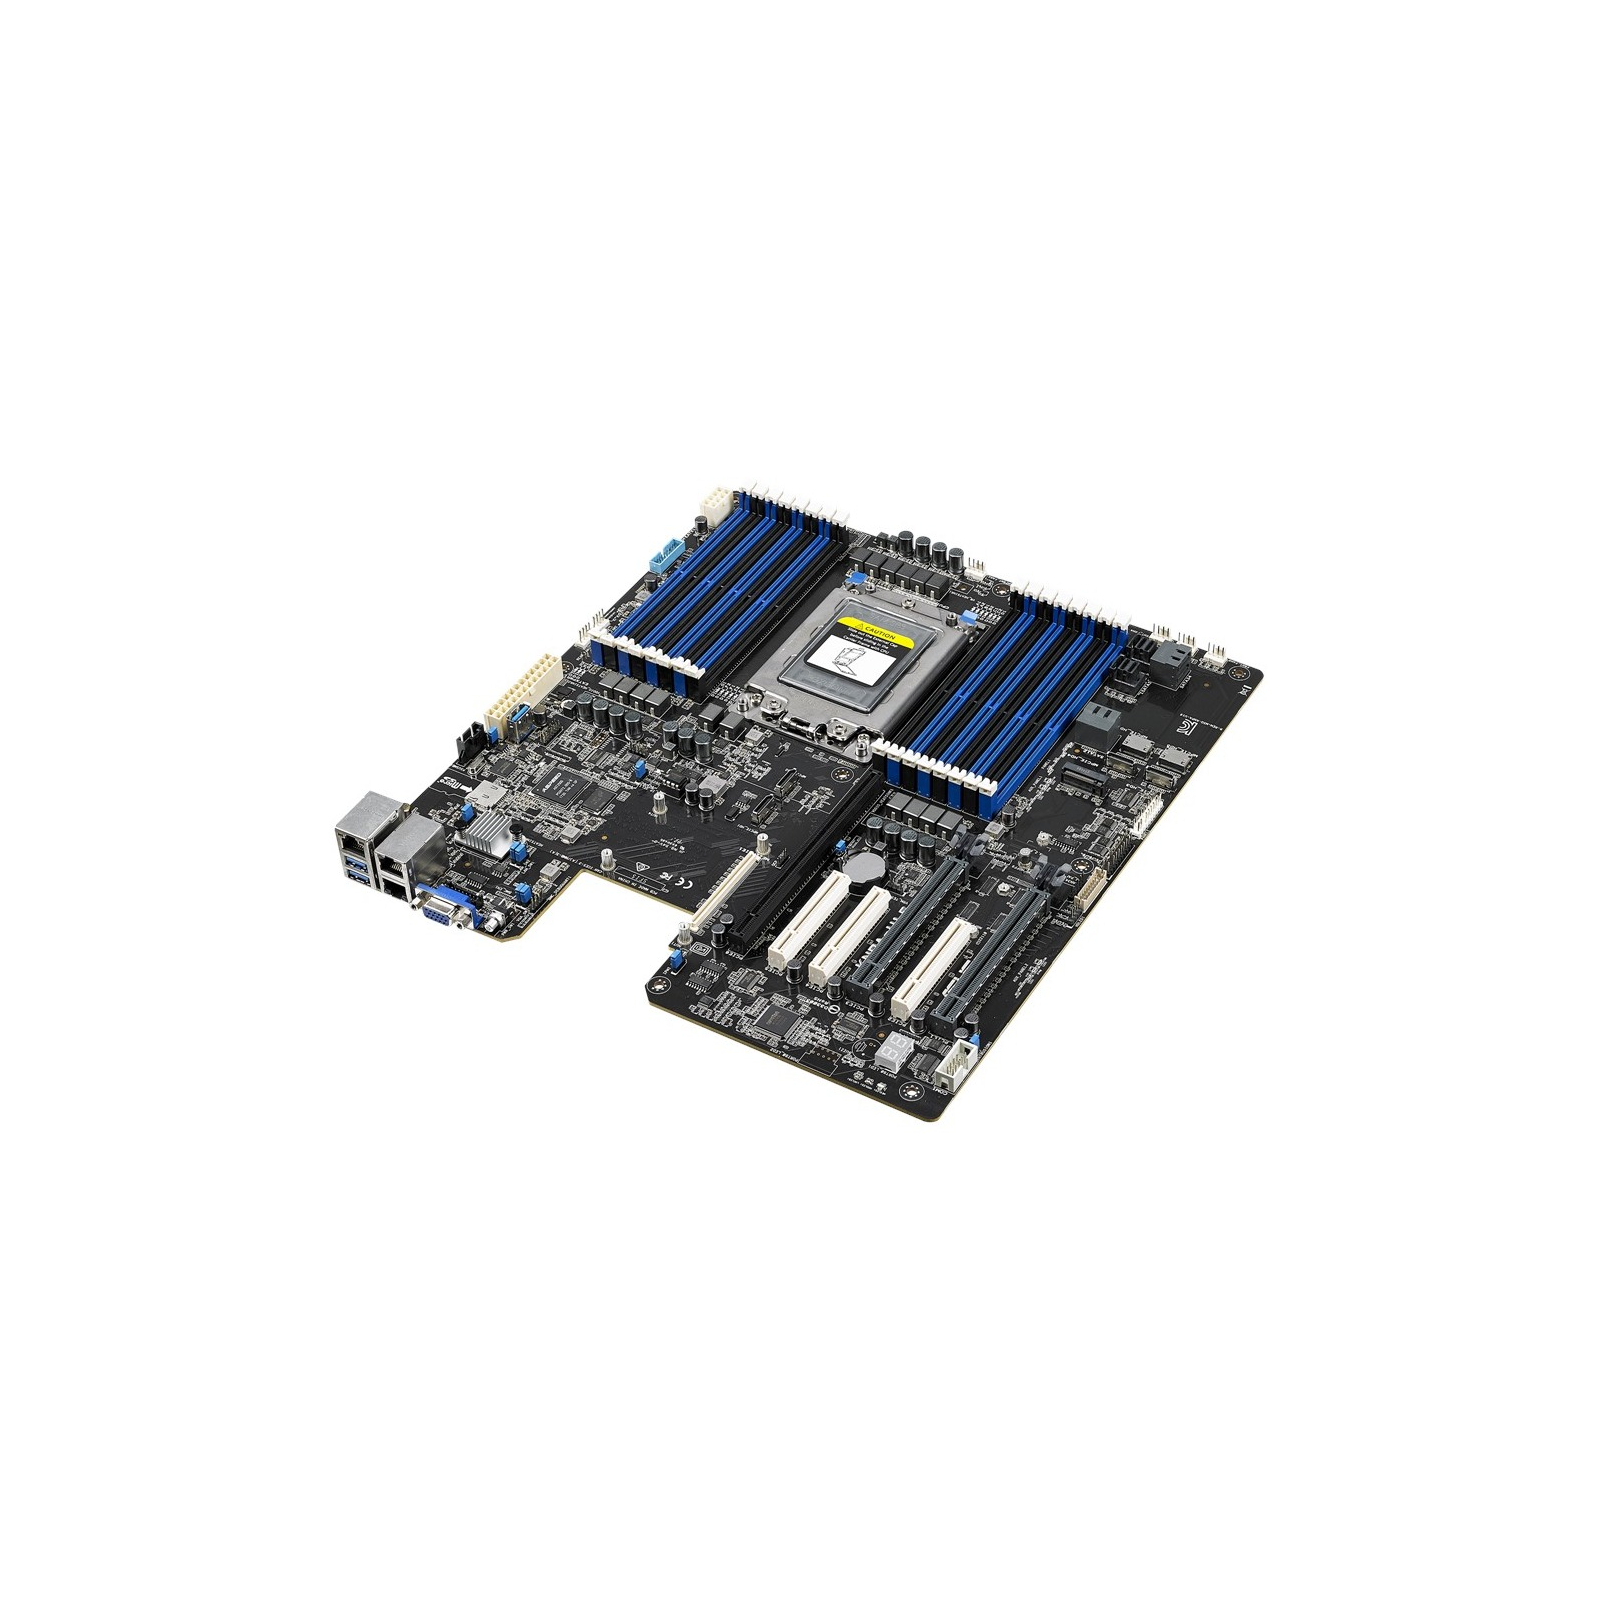 Серверная материнская плата ASUS KNPA-U16 SP3 AMD EPYC™ 7000 Series 16xDDR4 VGA AST2500 64MB (KNPA-U16)